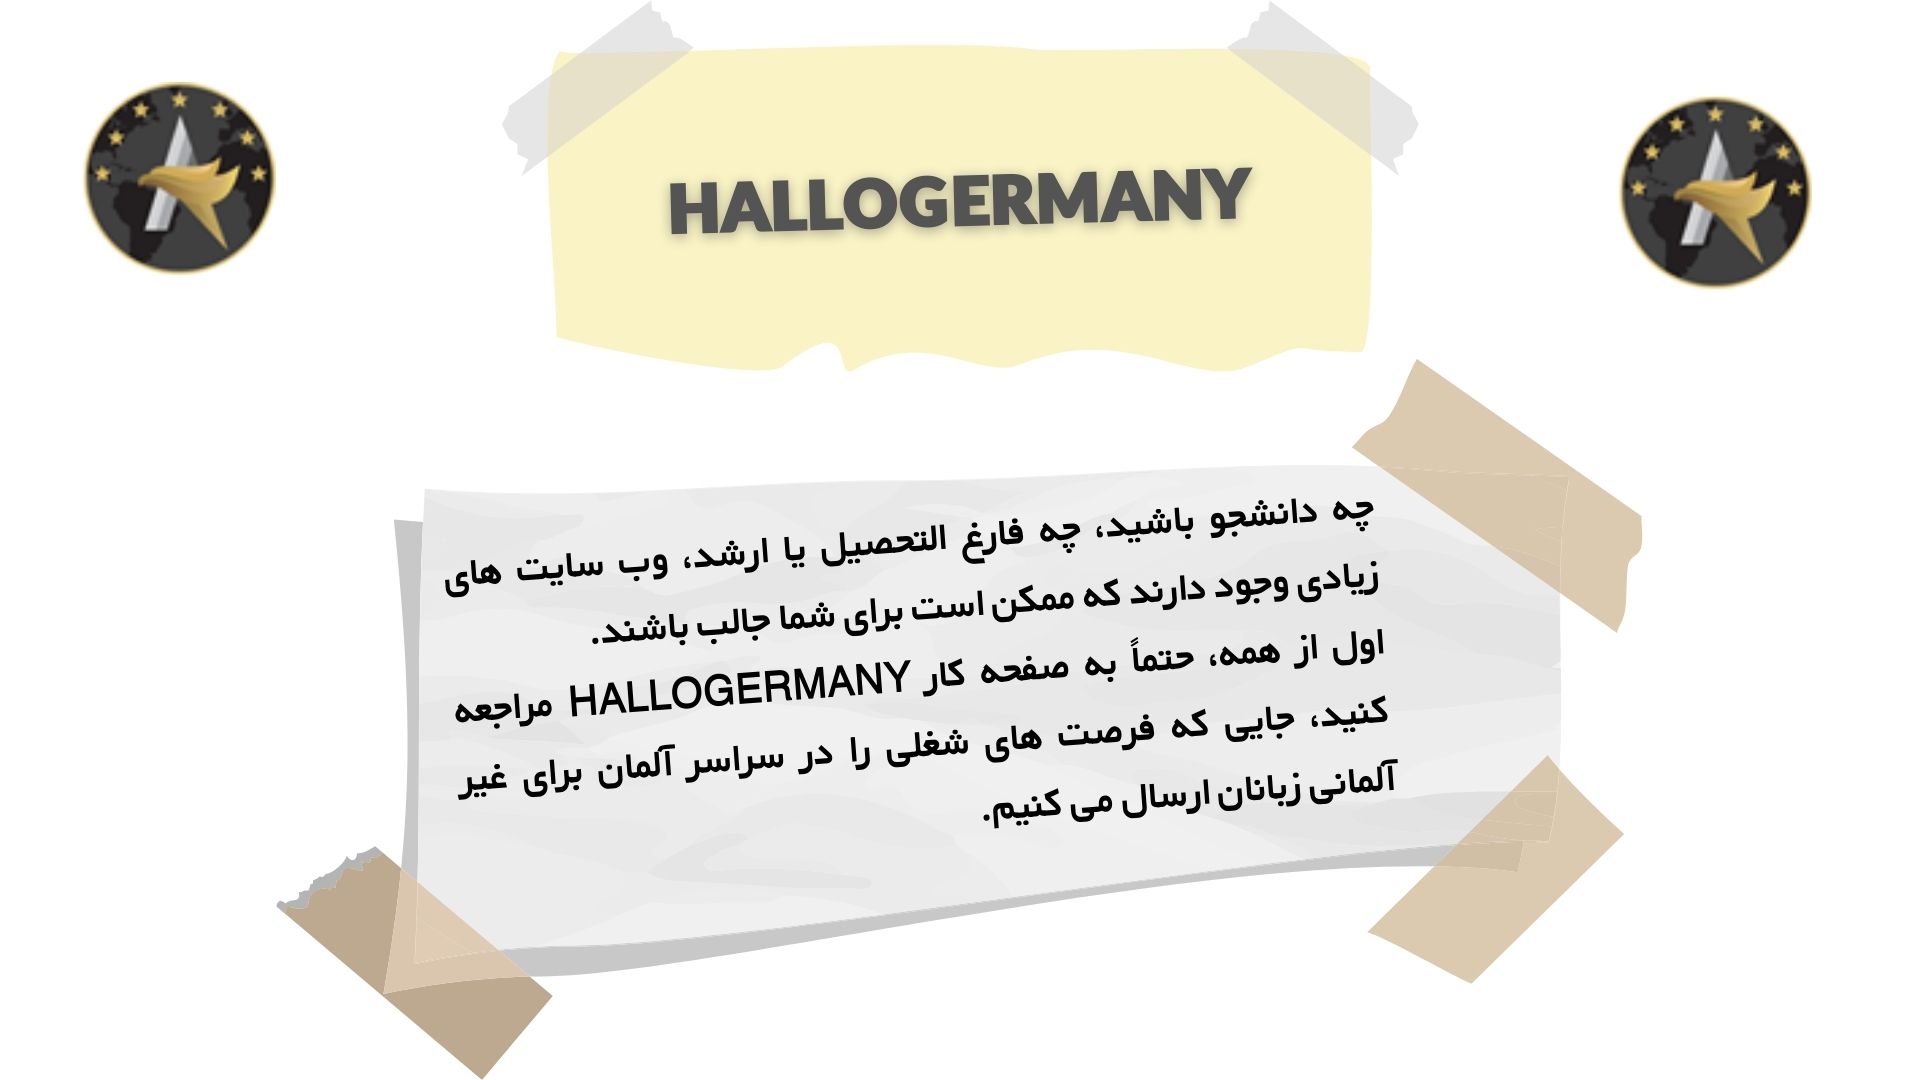 HalloGermany